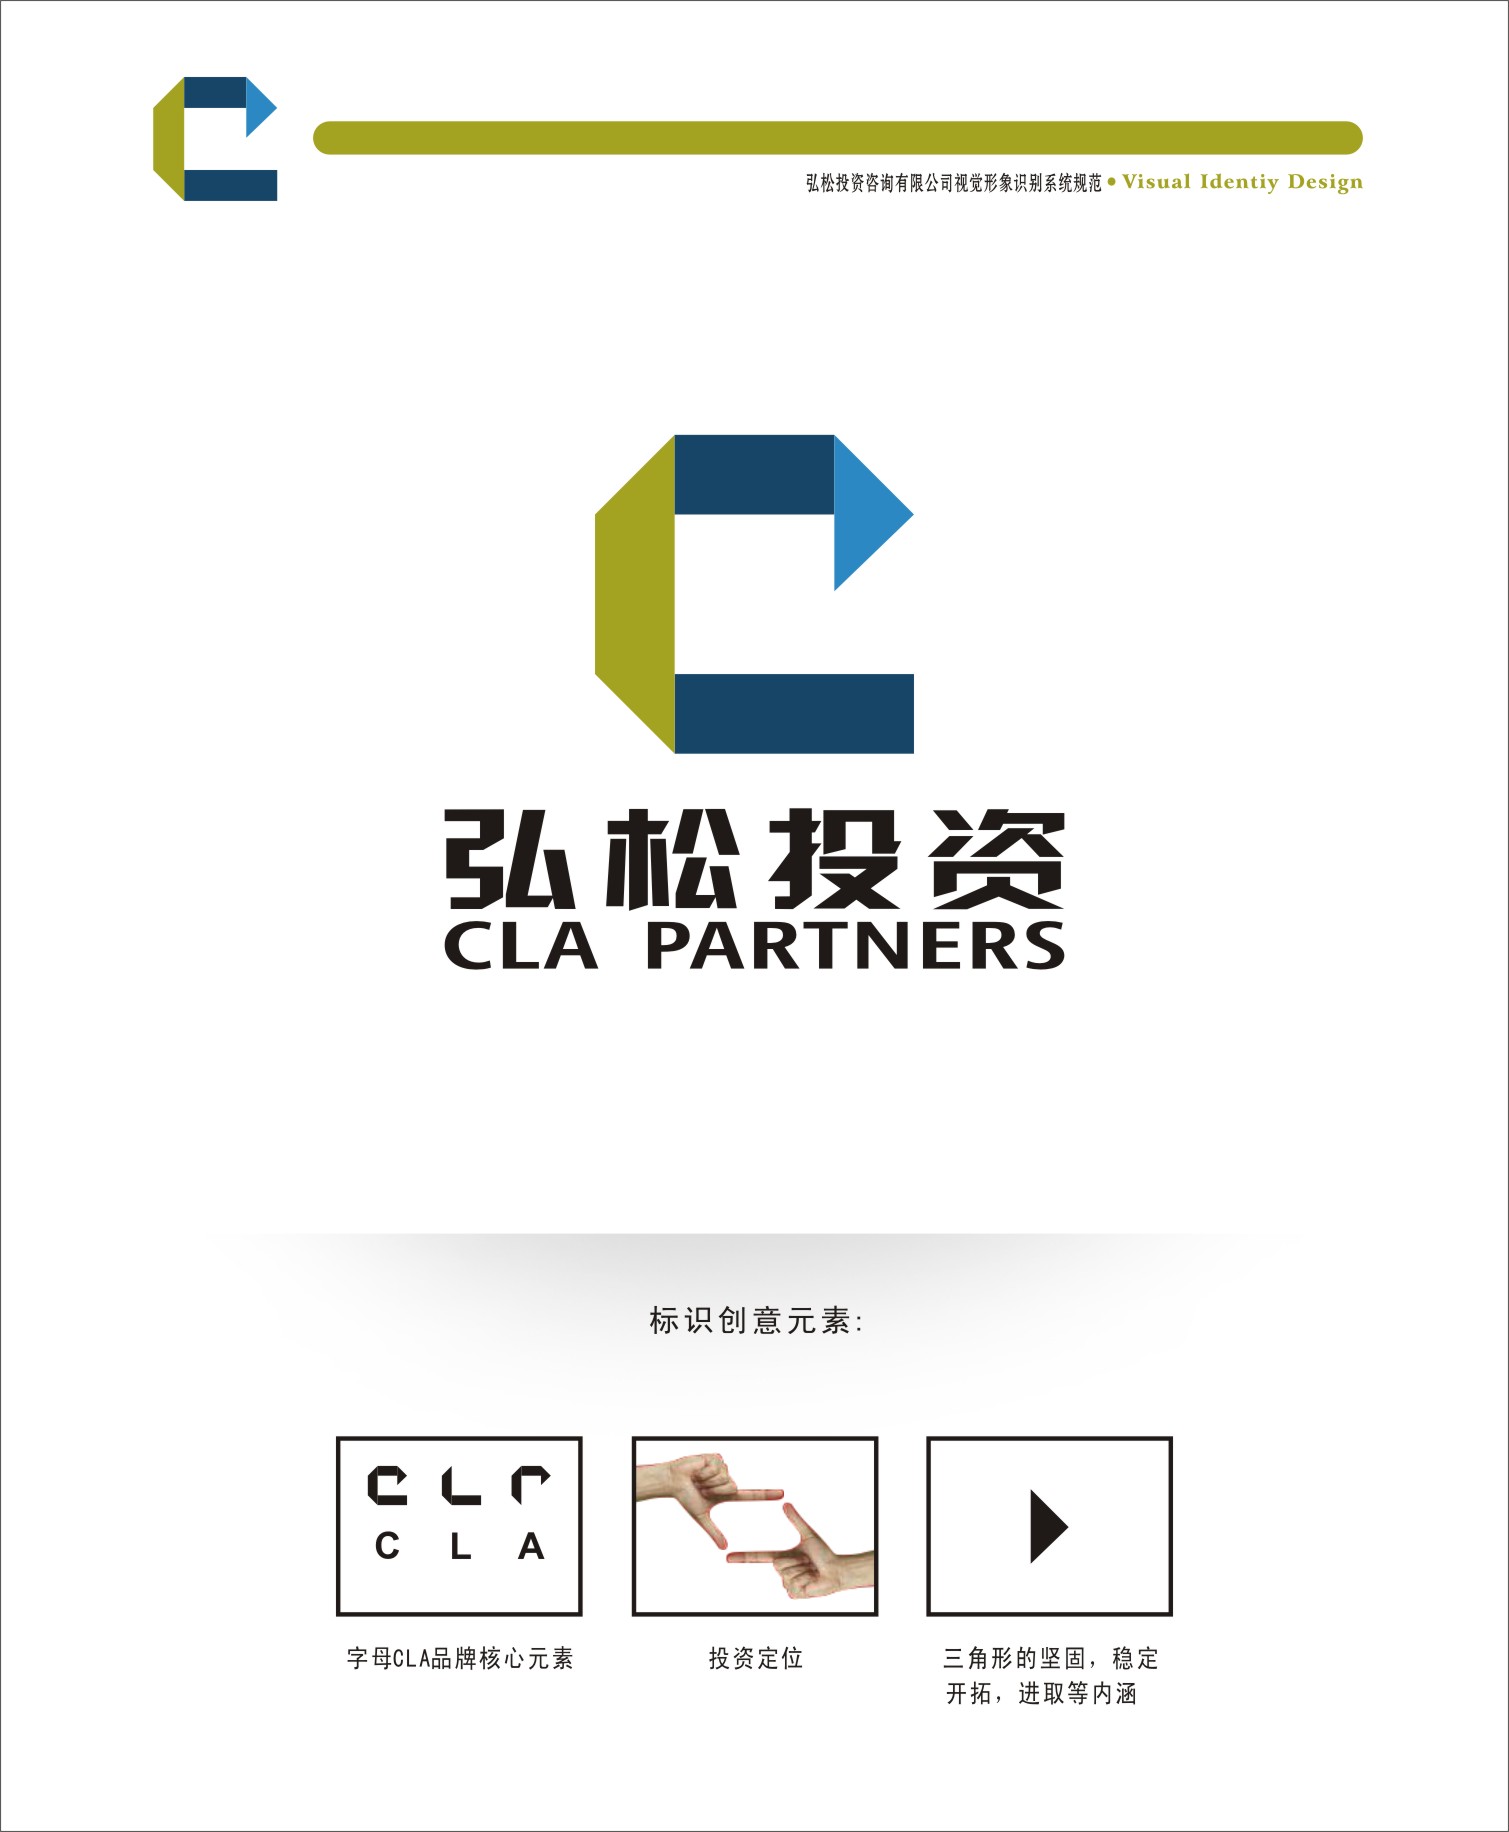 北京弘松投资咨询公司Logo\/名片设计_600元_